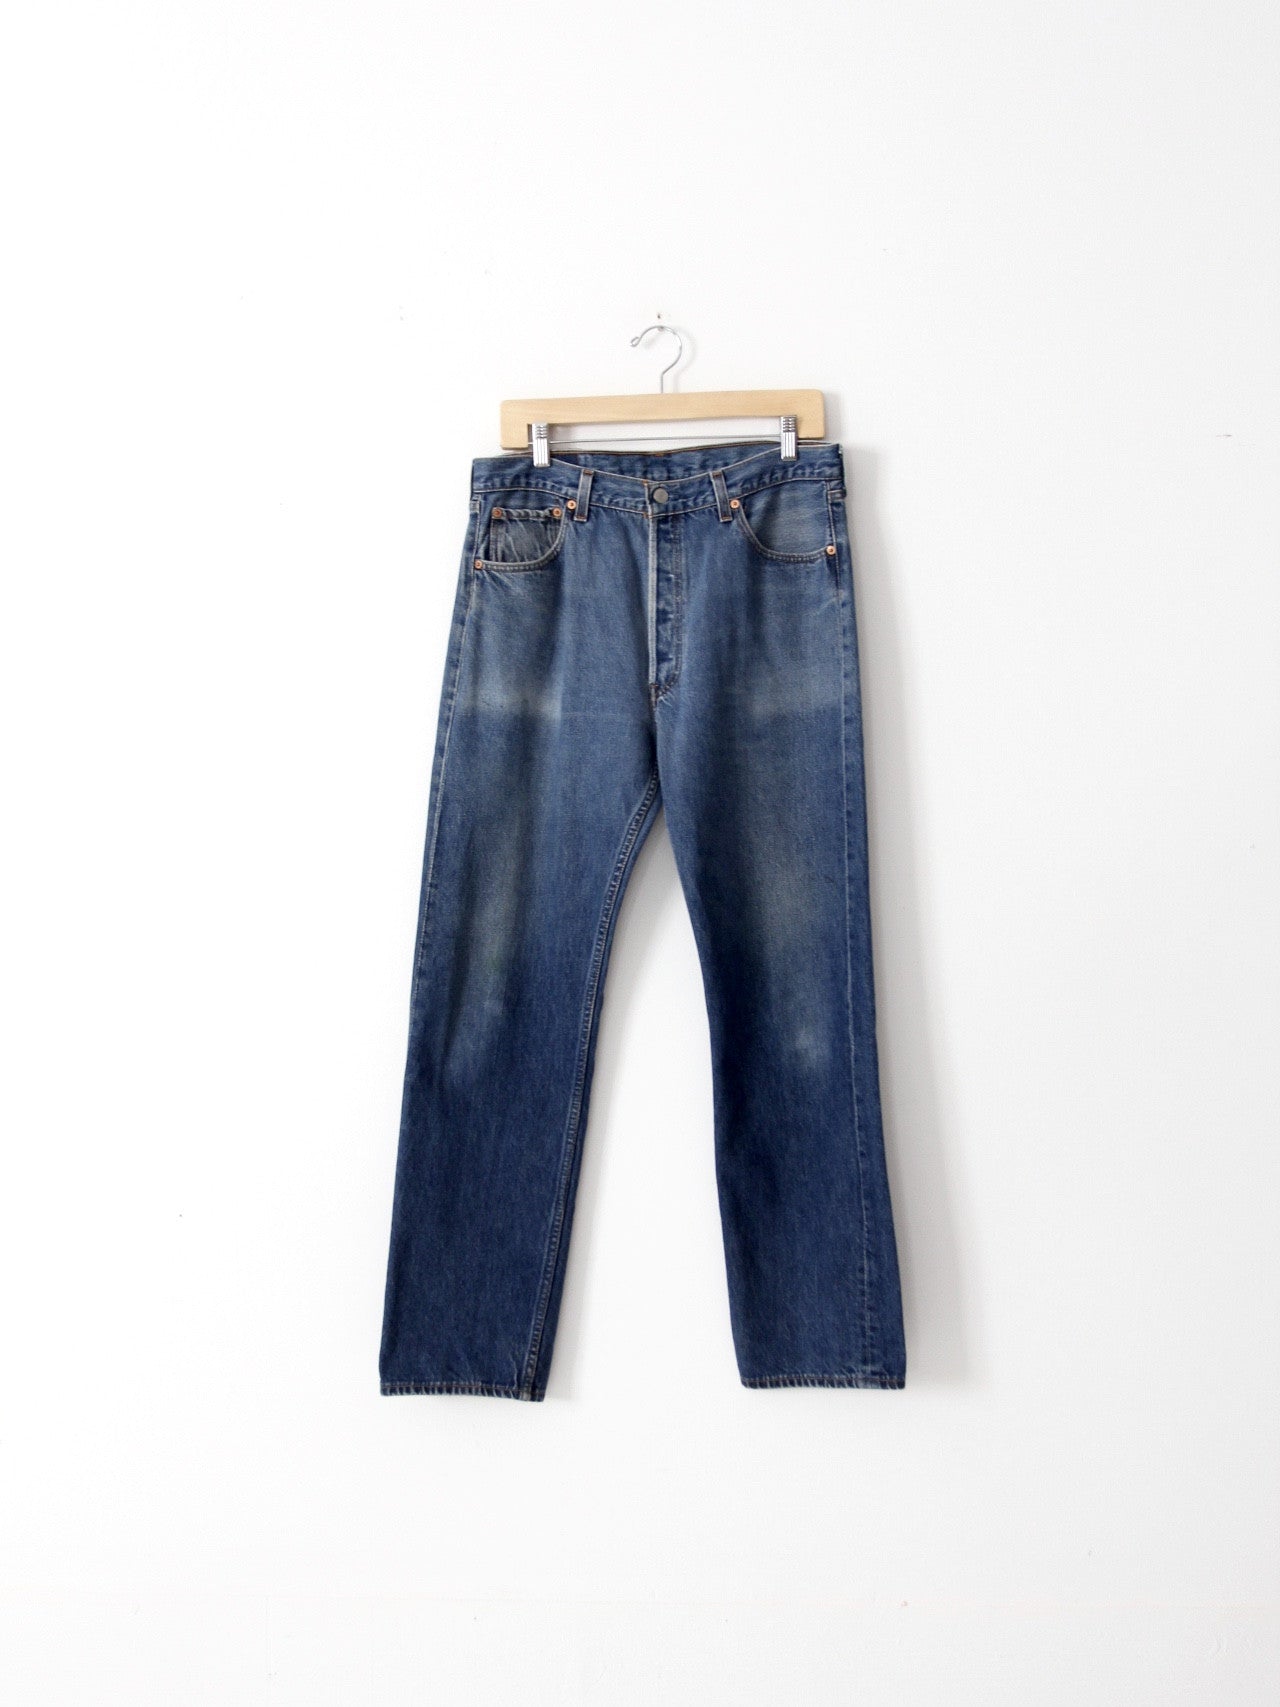 vintage Levis 501xx jeans, 34 x 31 – 86 Vintage